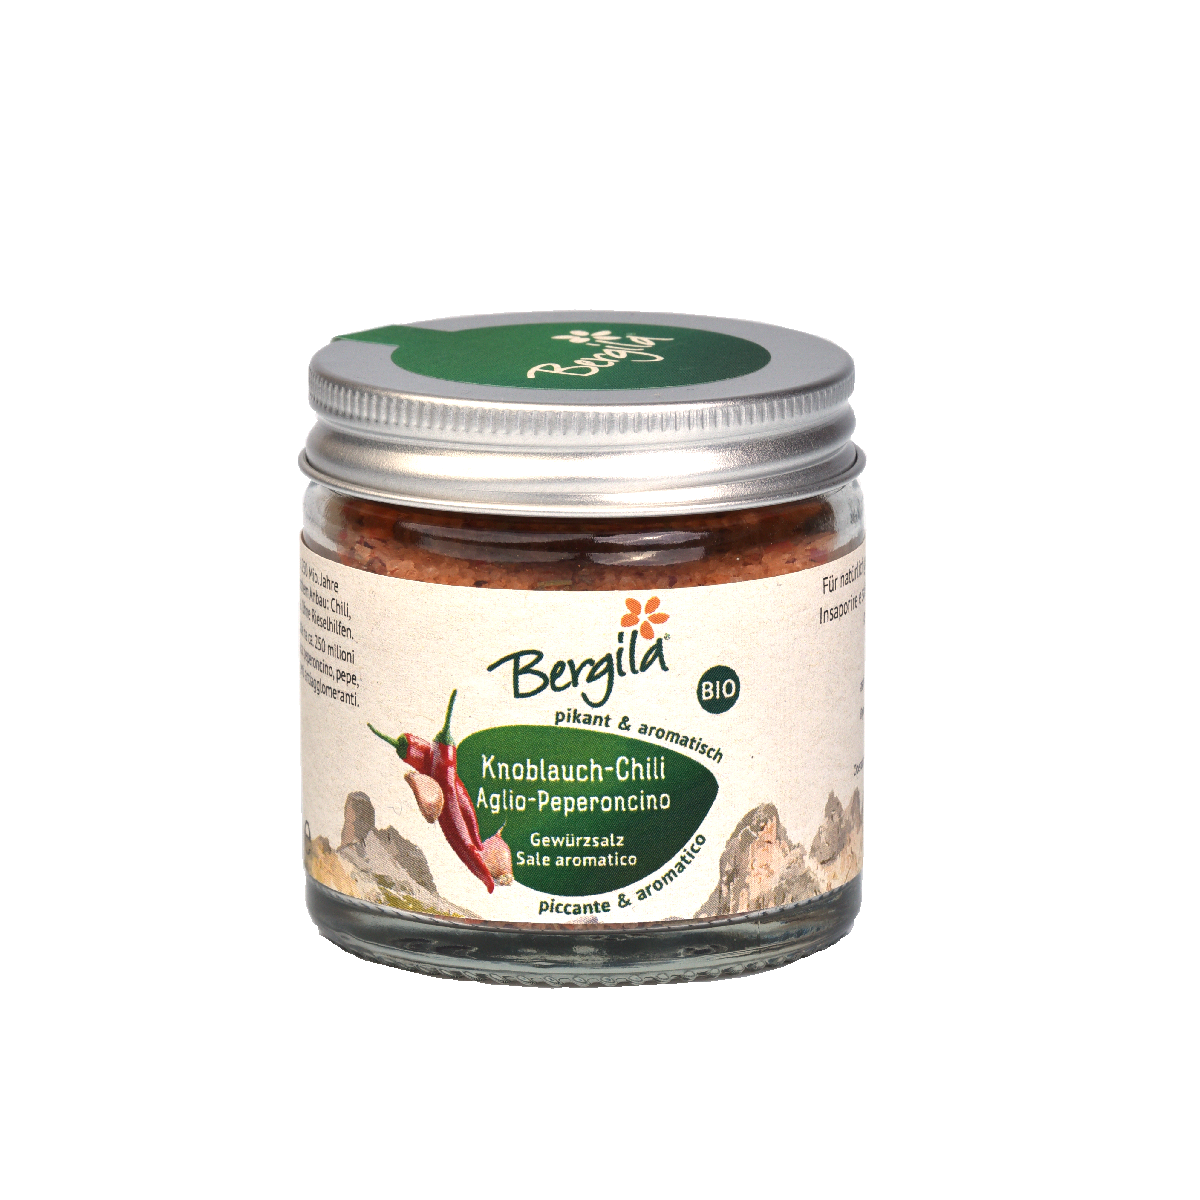 Sale aromatico aglio - peperoncino bio  <br>